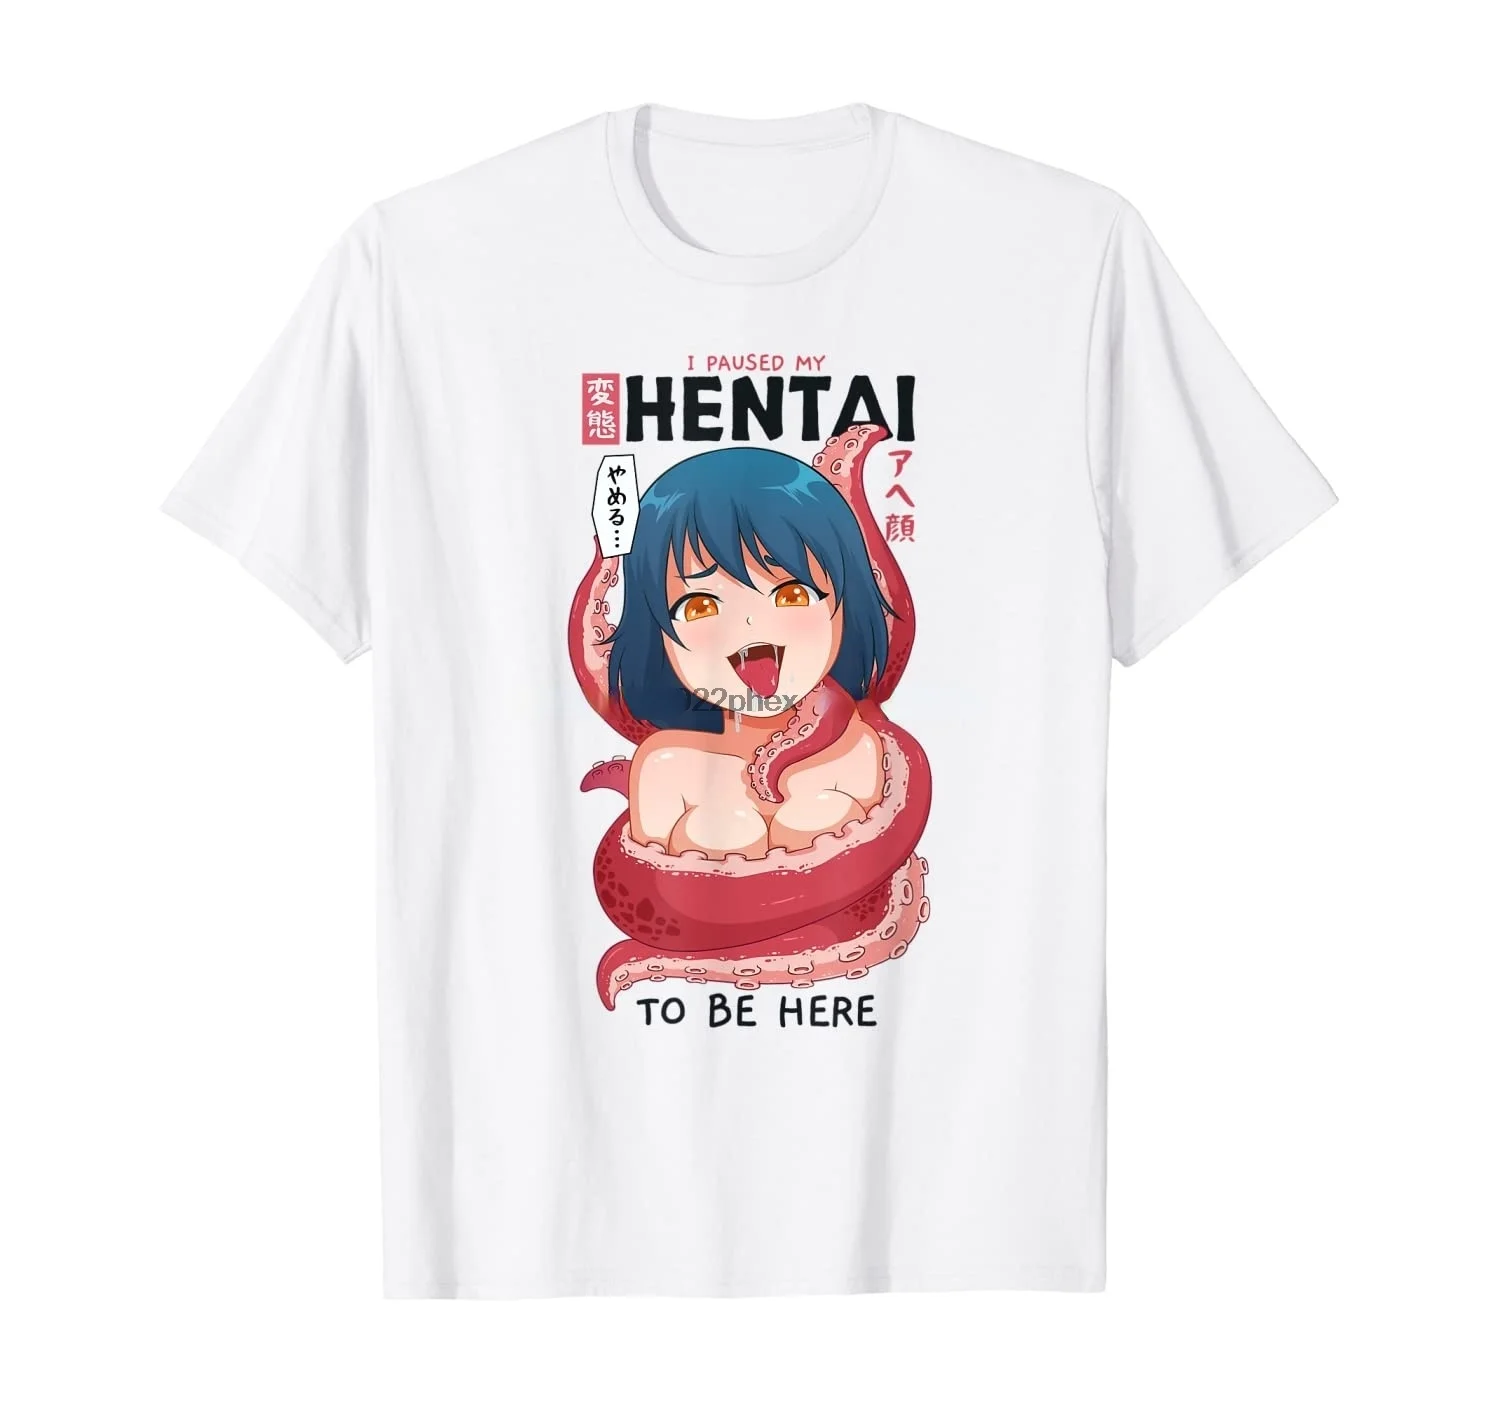 Henti Shirt